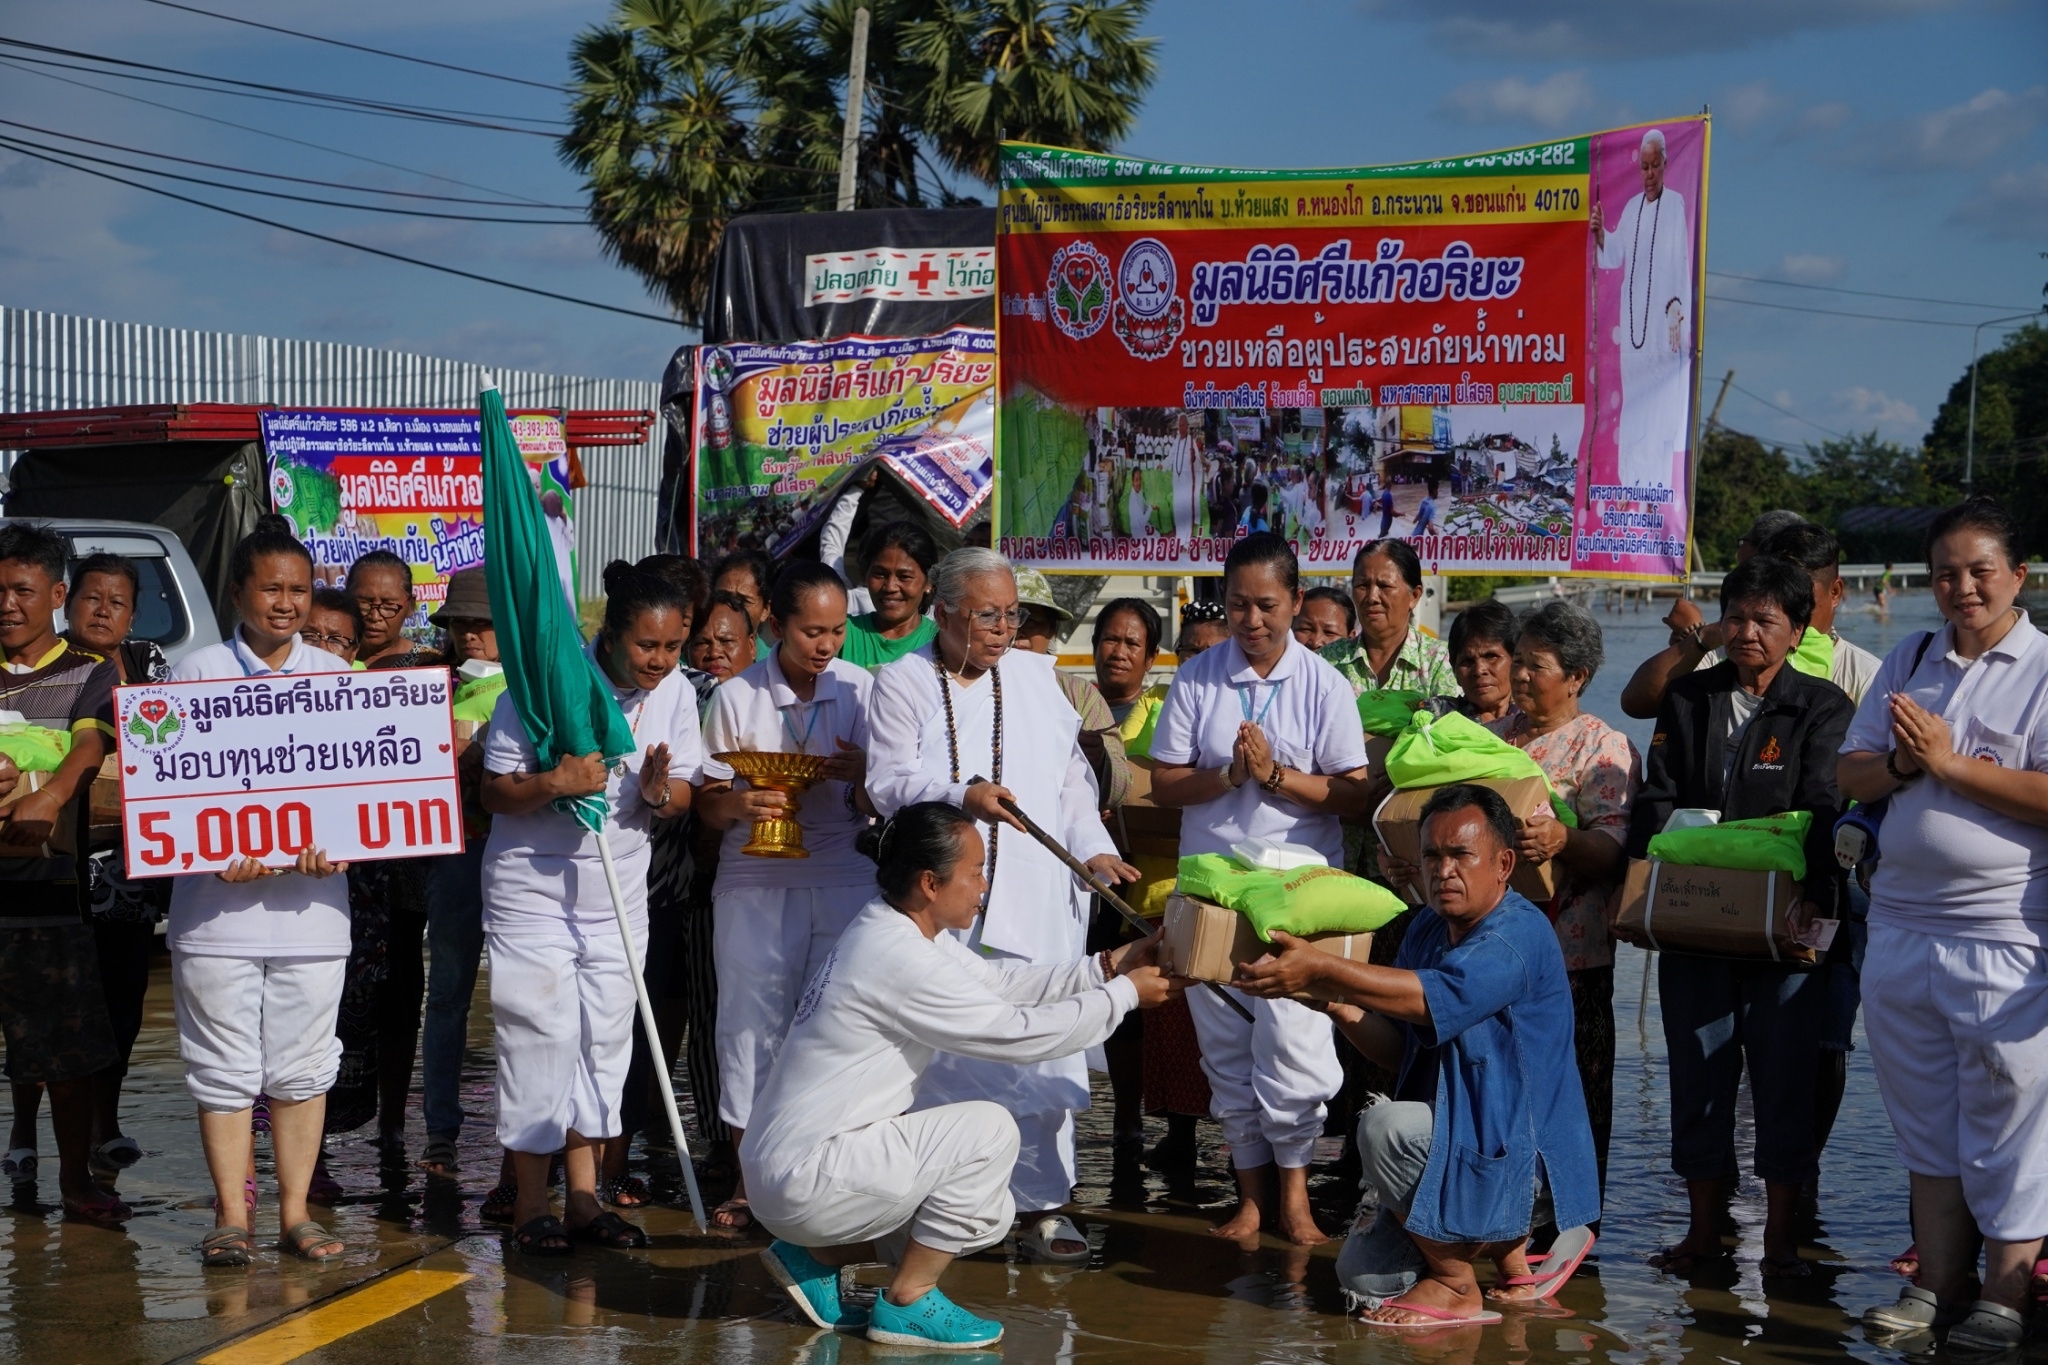 โครงการช่วยเหลือผู้ประสบภัยน้ำท่วมจังหวัดอุบลราชธานี   วันที่ 16  กันยายน  2562 ณ  พื้นที่บ้านท่ากกเสียว อำเภอวาริน ชุมชนวัดบูรพา 2 อำเภอเมือง จังหวัดอุบลราชธานี